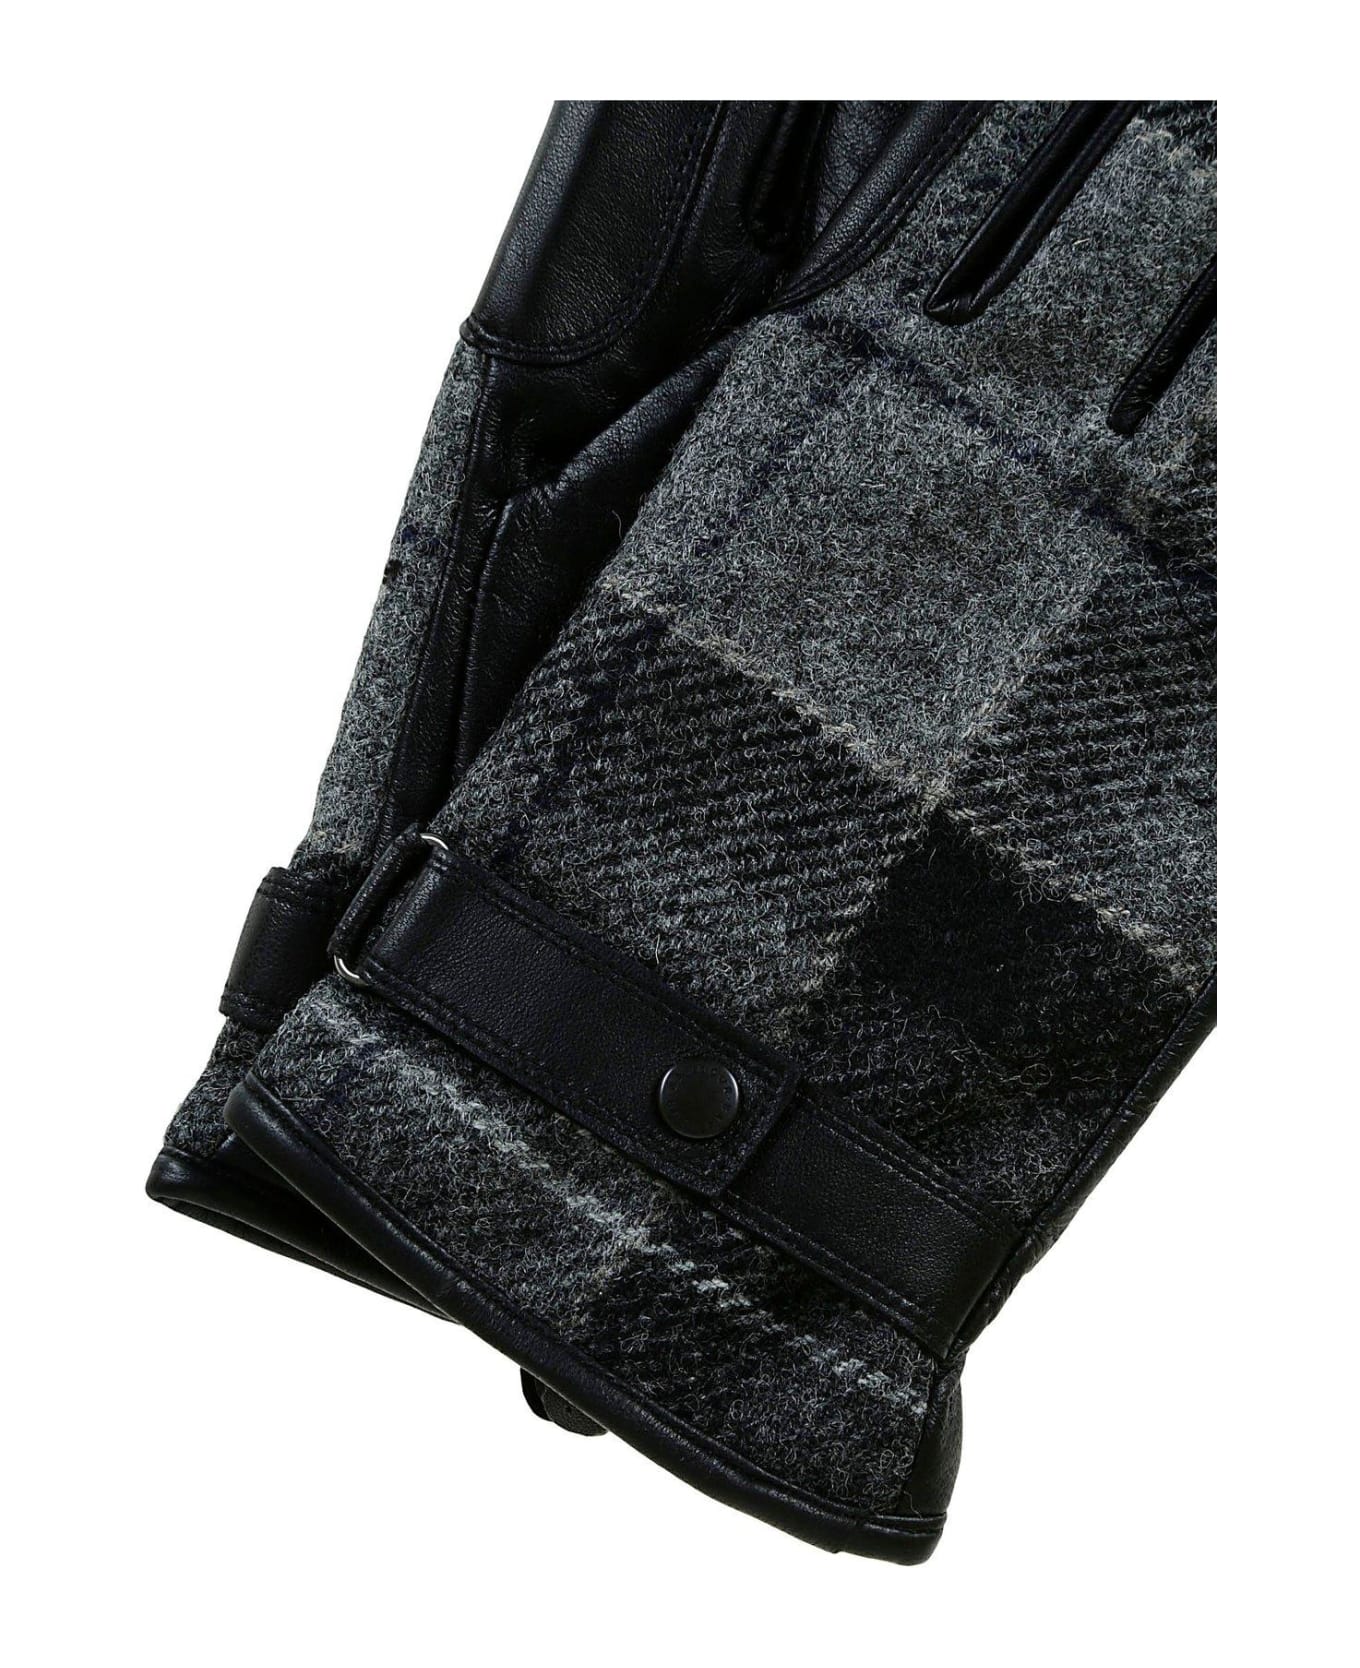 Barbour Black And Grey Tartan Wool Gloves - Black/grey 手袋